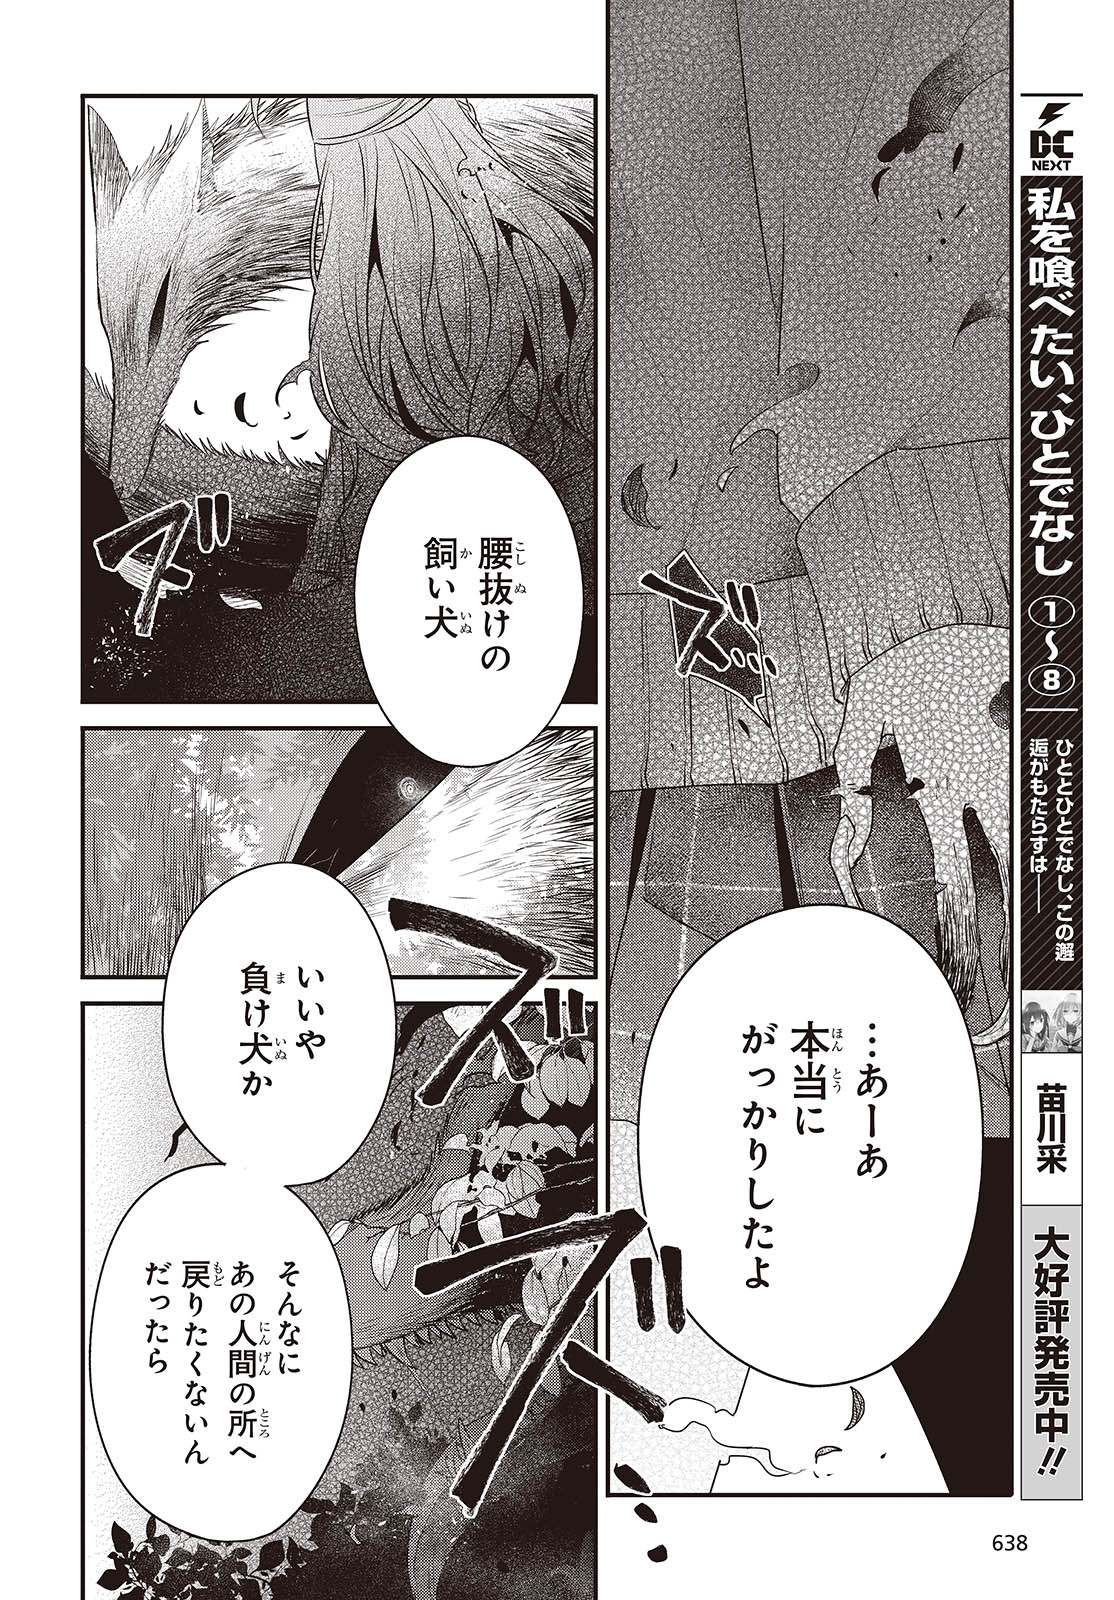 Watashi wo Tabetai, Hitodenashi - Chapter 38 - Page 6